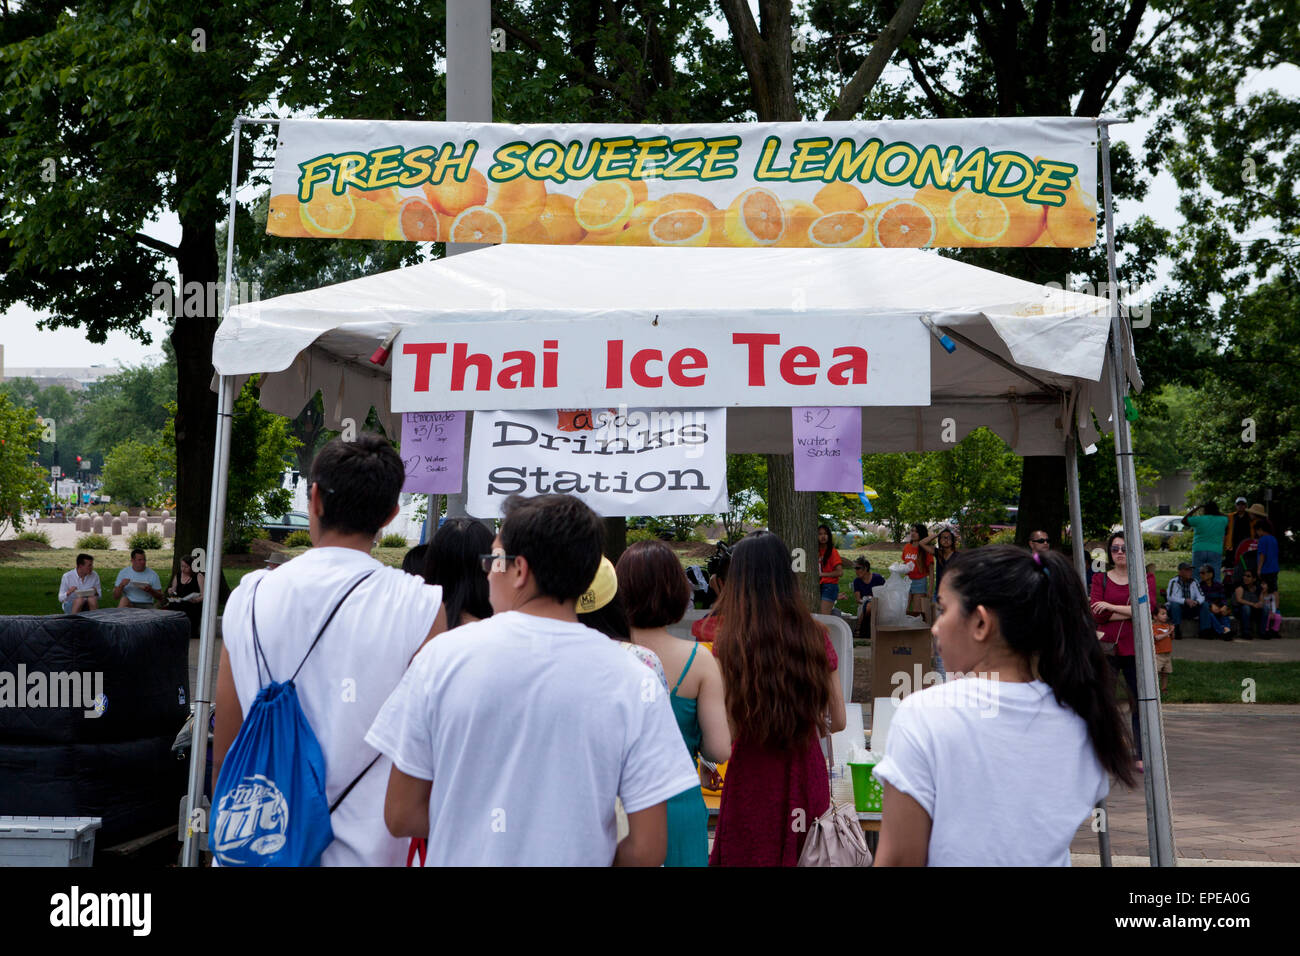 Thai Ice Tea vendor tent at an outdoor festival - USA Stock Photo